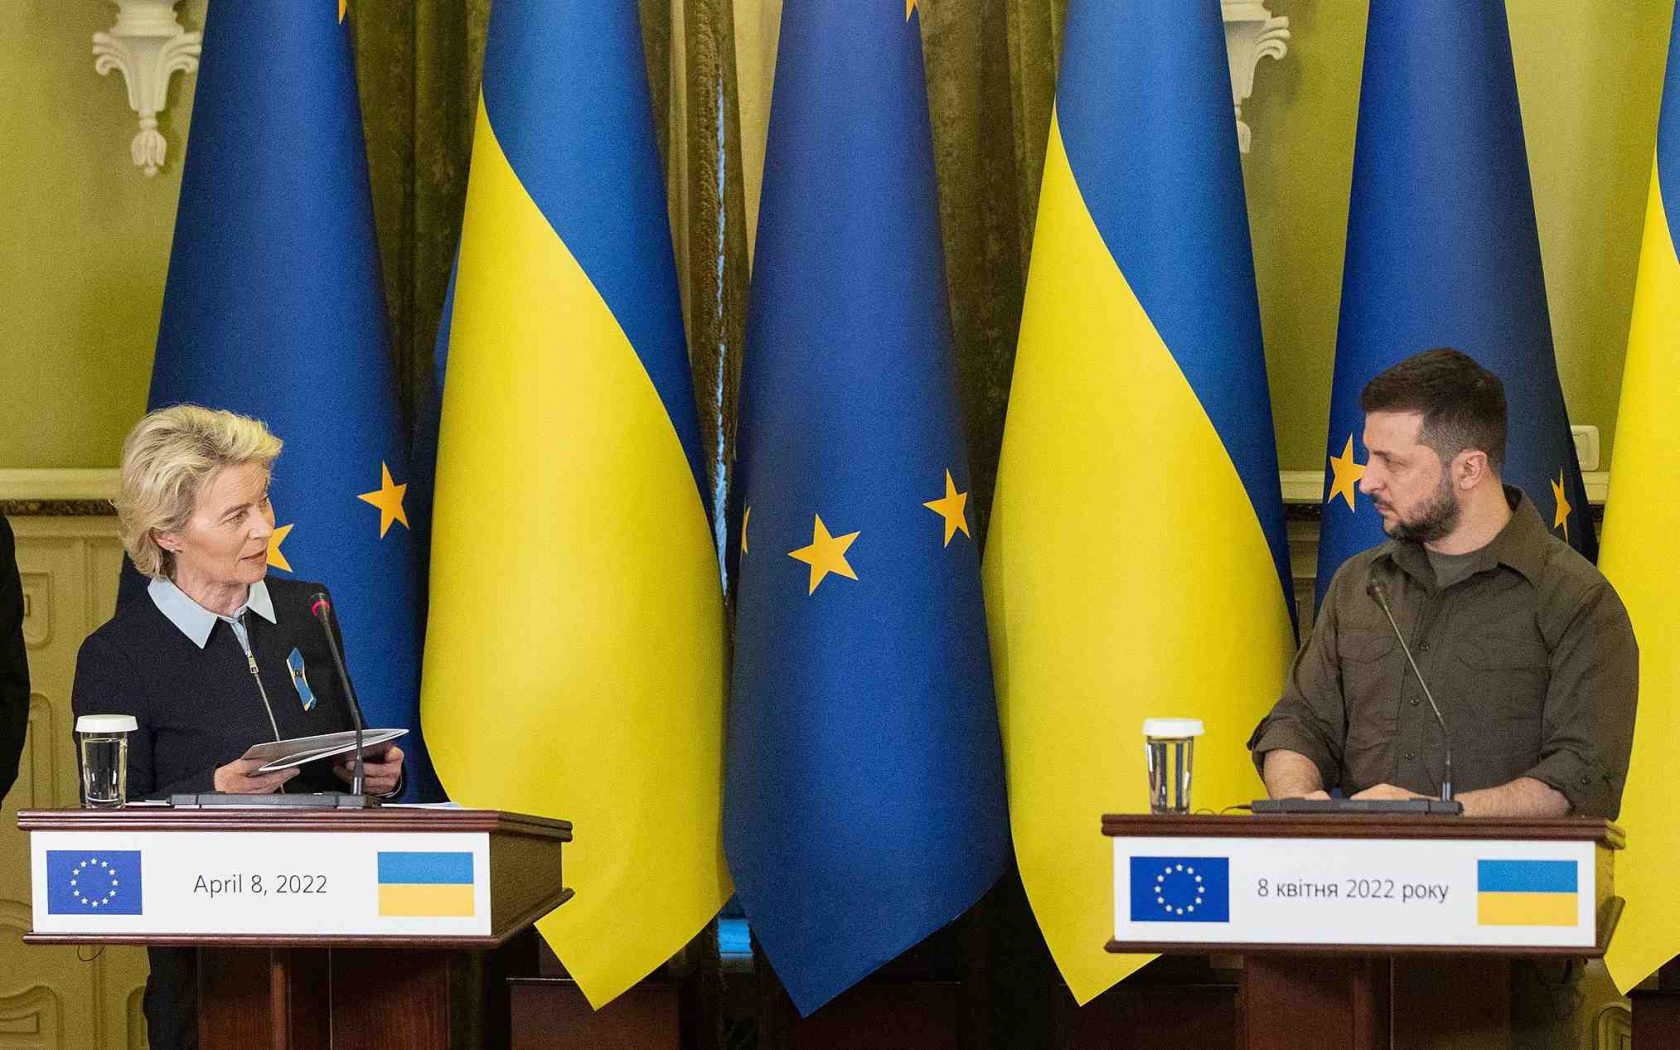 L’Europa e l’Ucraina: favorevoli, contrari e titubanti